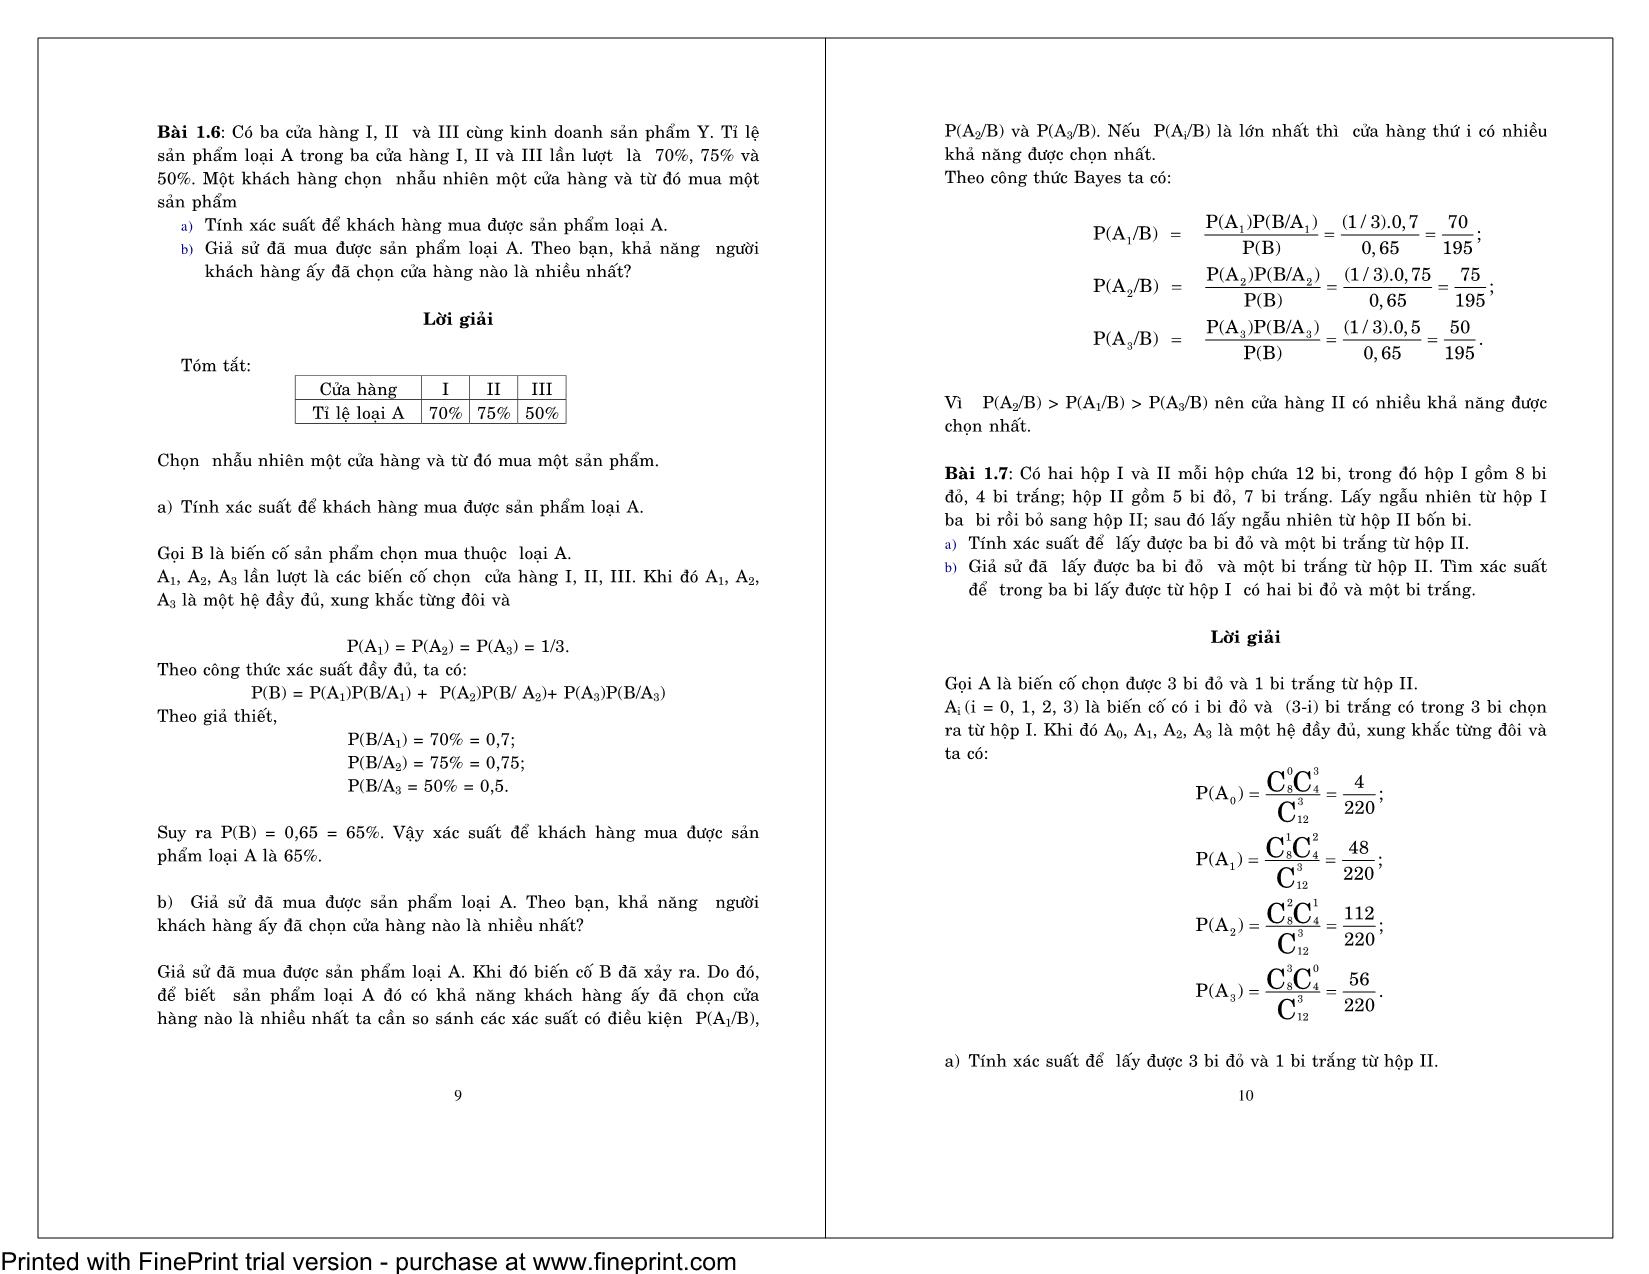 Bài giải về xác suất thống kê trang 5